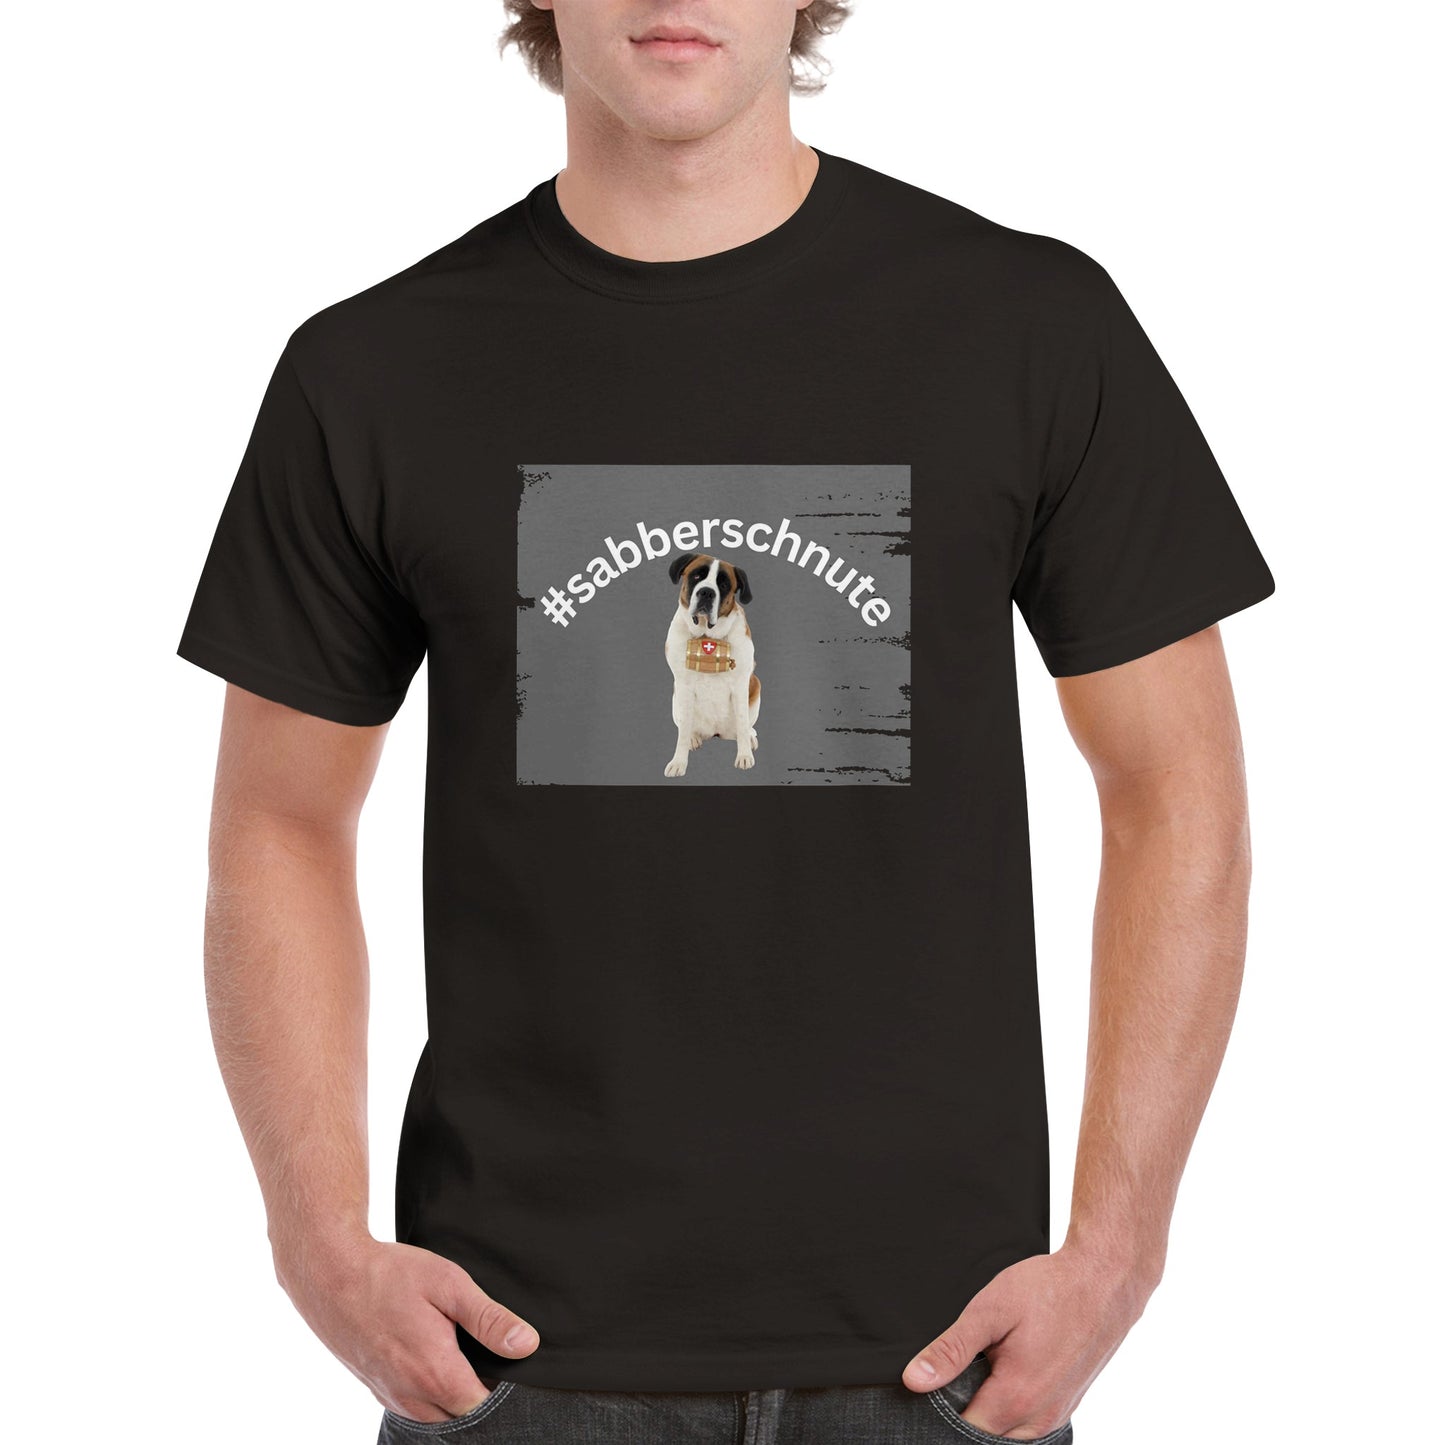 Sabberschnute Irma Herren T - Shirt